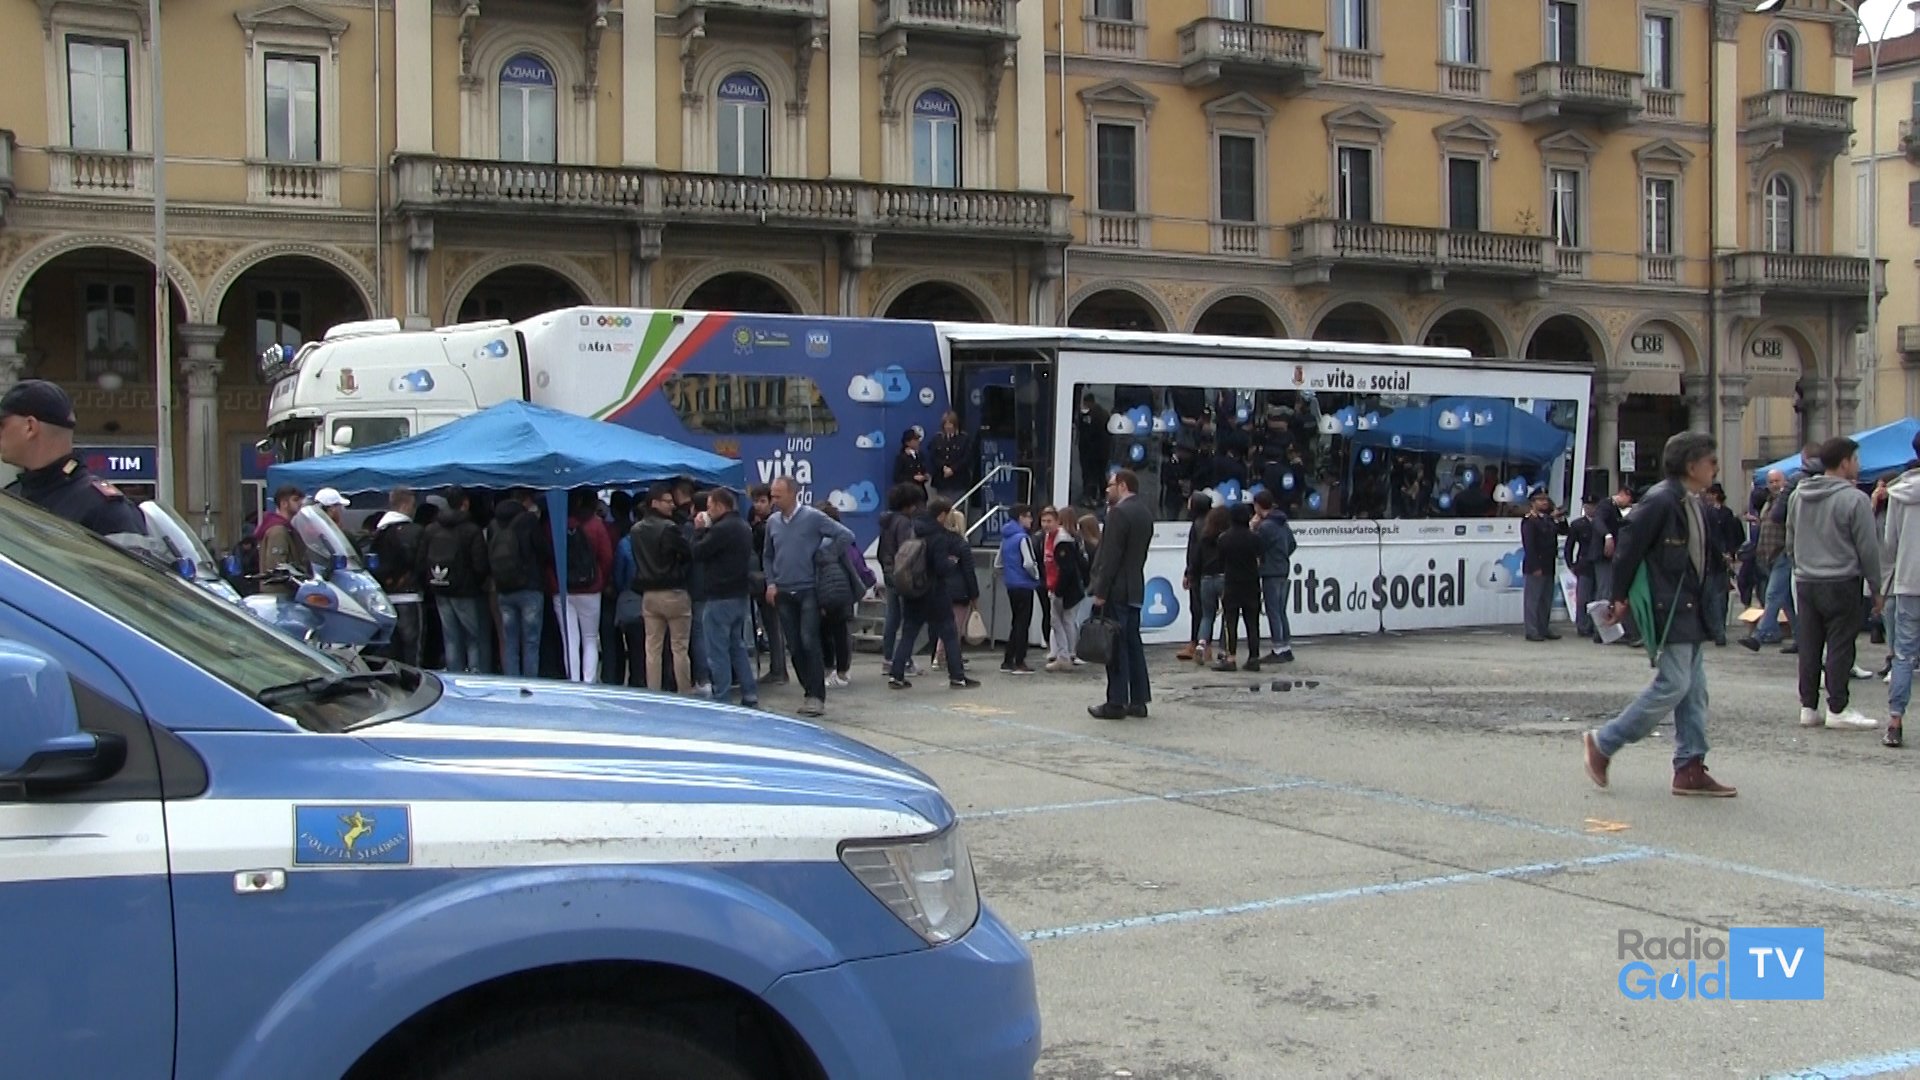 In piazza Garibaldi il Truck della Polizia Postale “Una vita da social”